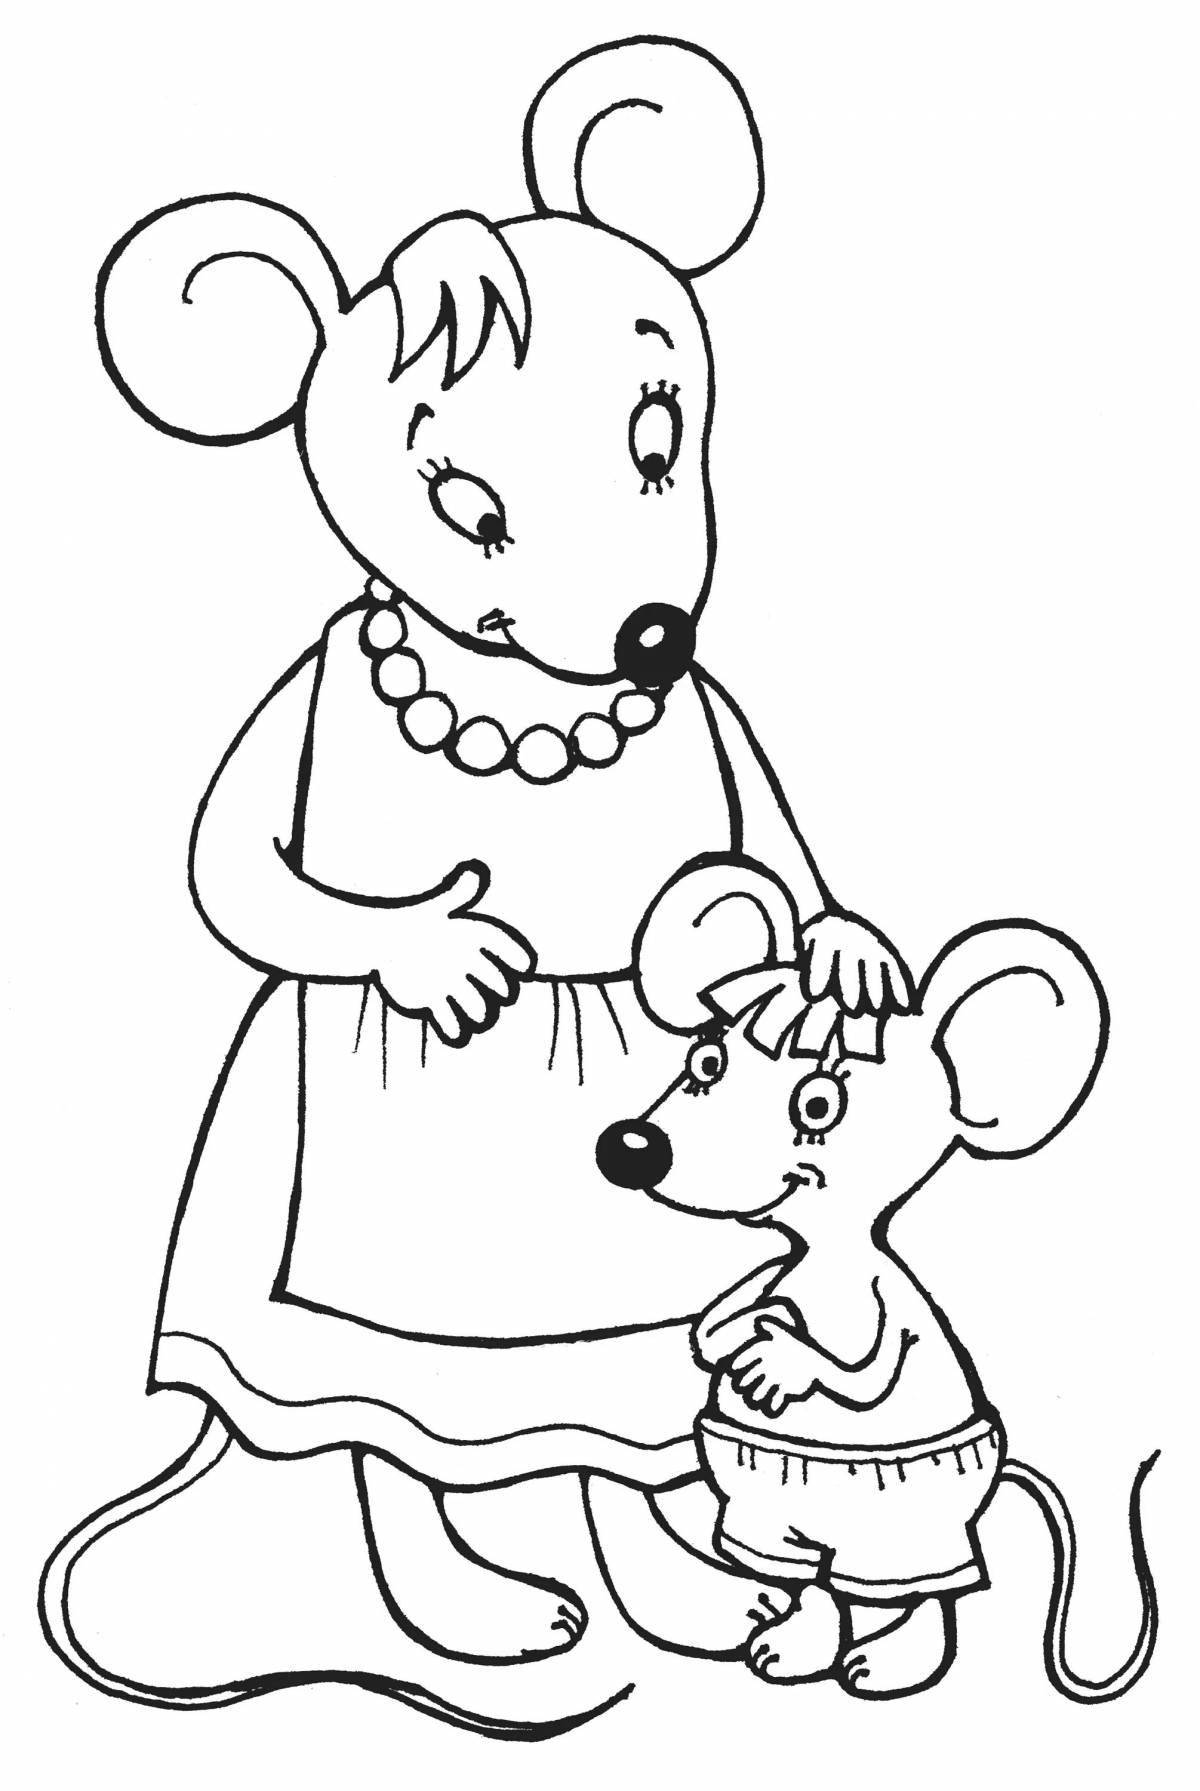 Увлекательная раскраска сказка о глупом мышонке